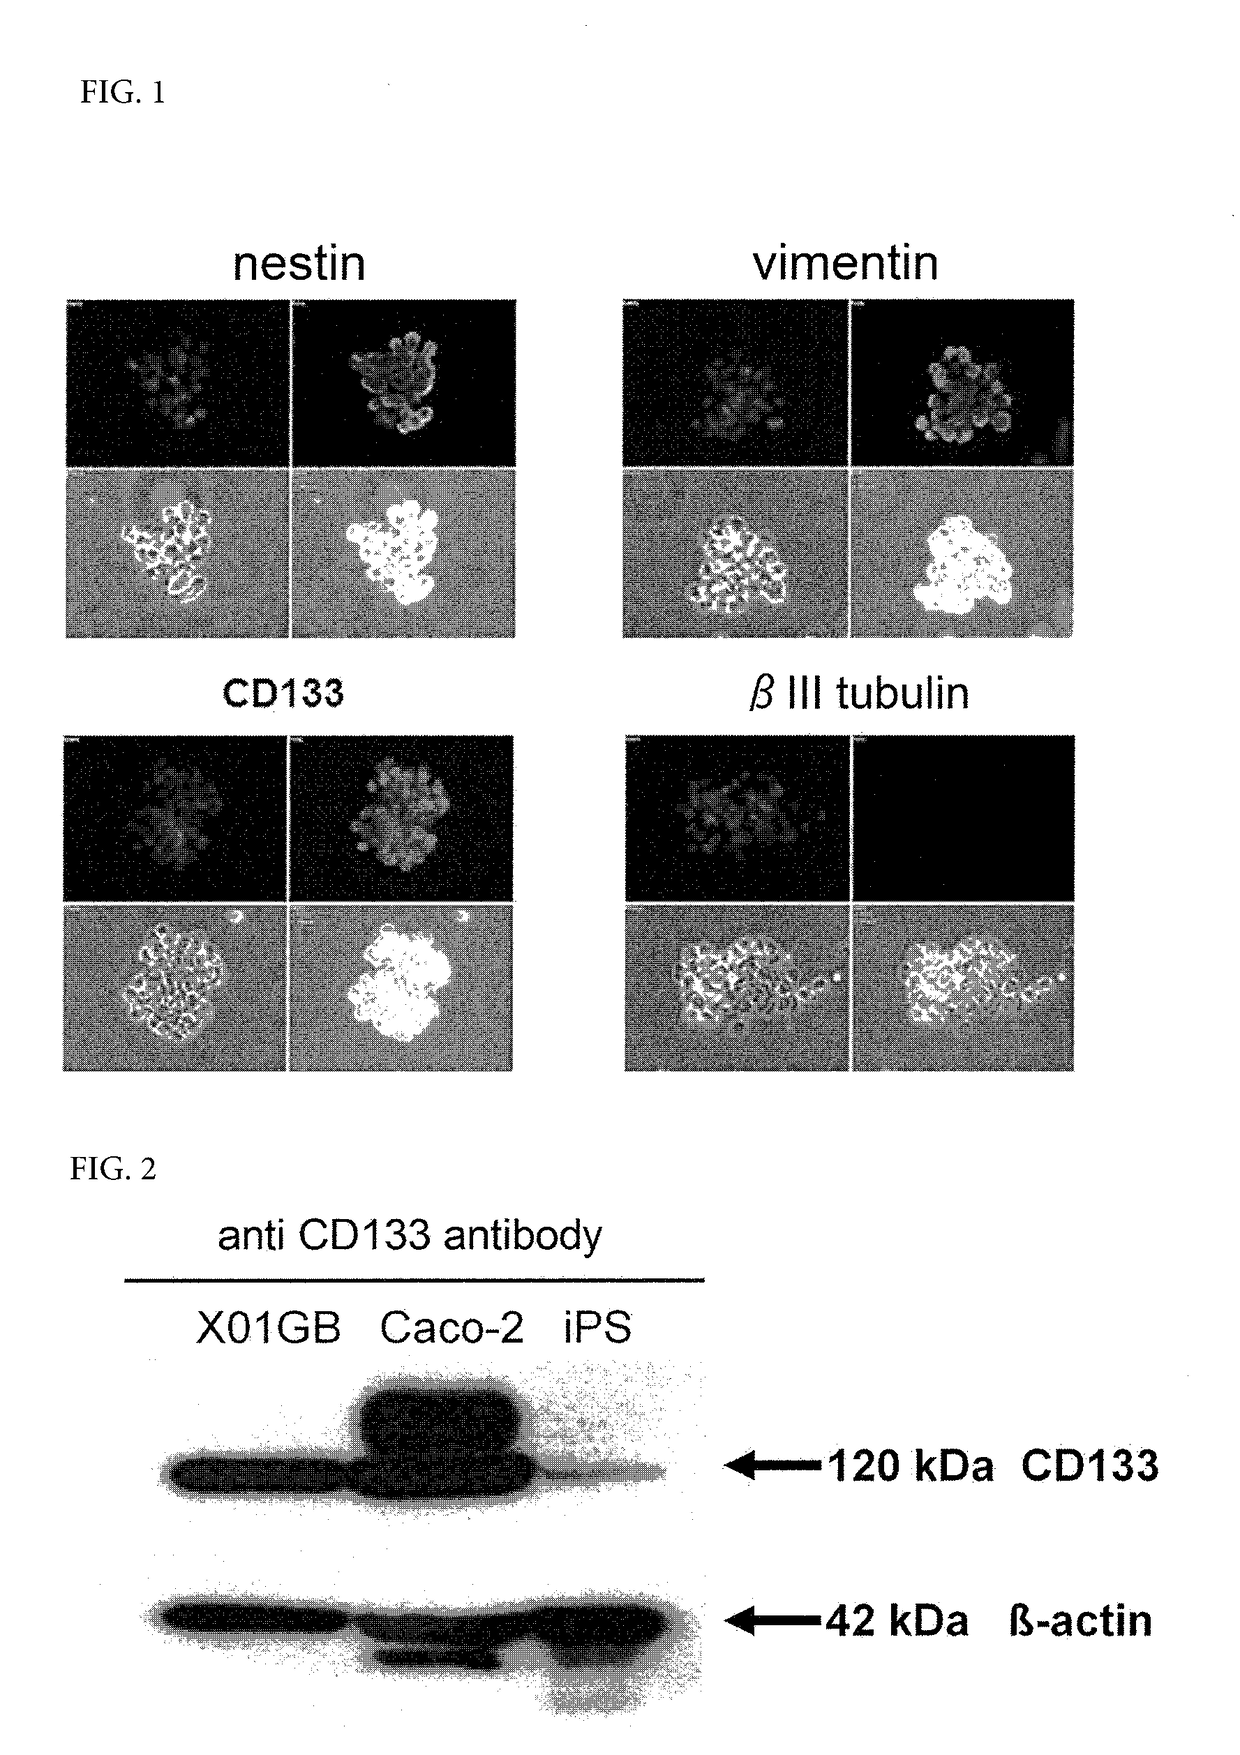 Viral vector targeting cancer stem cells